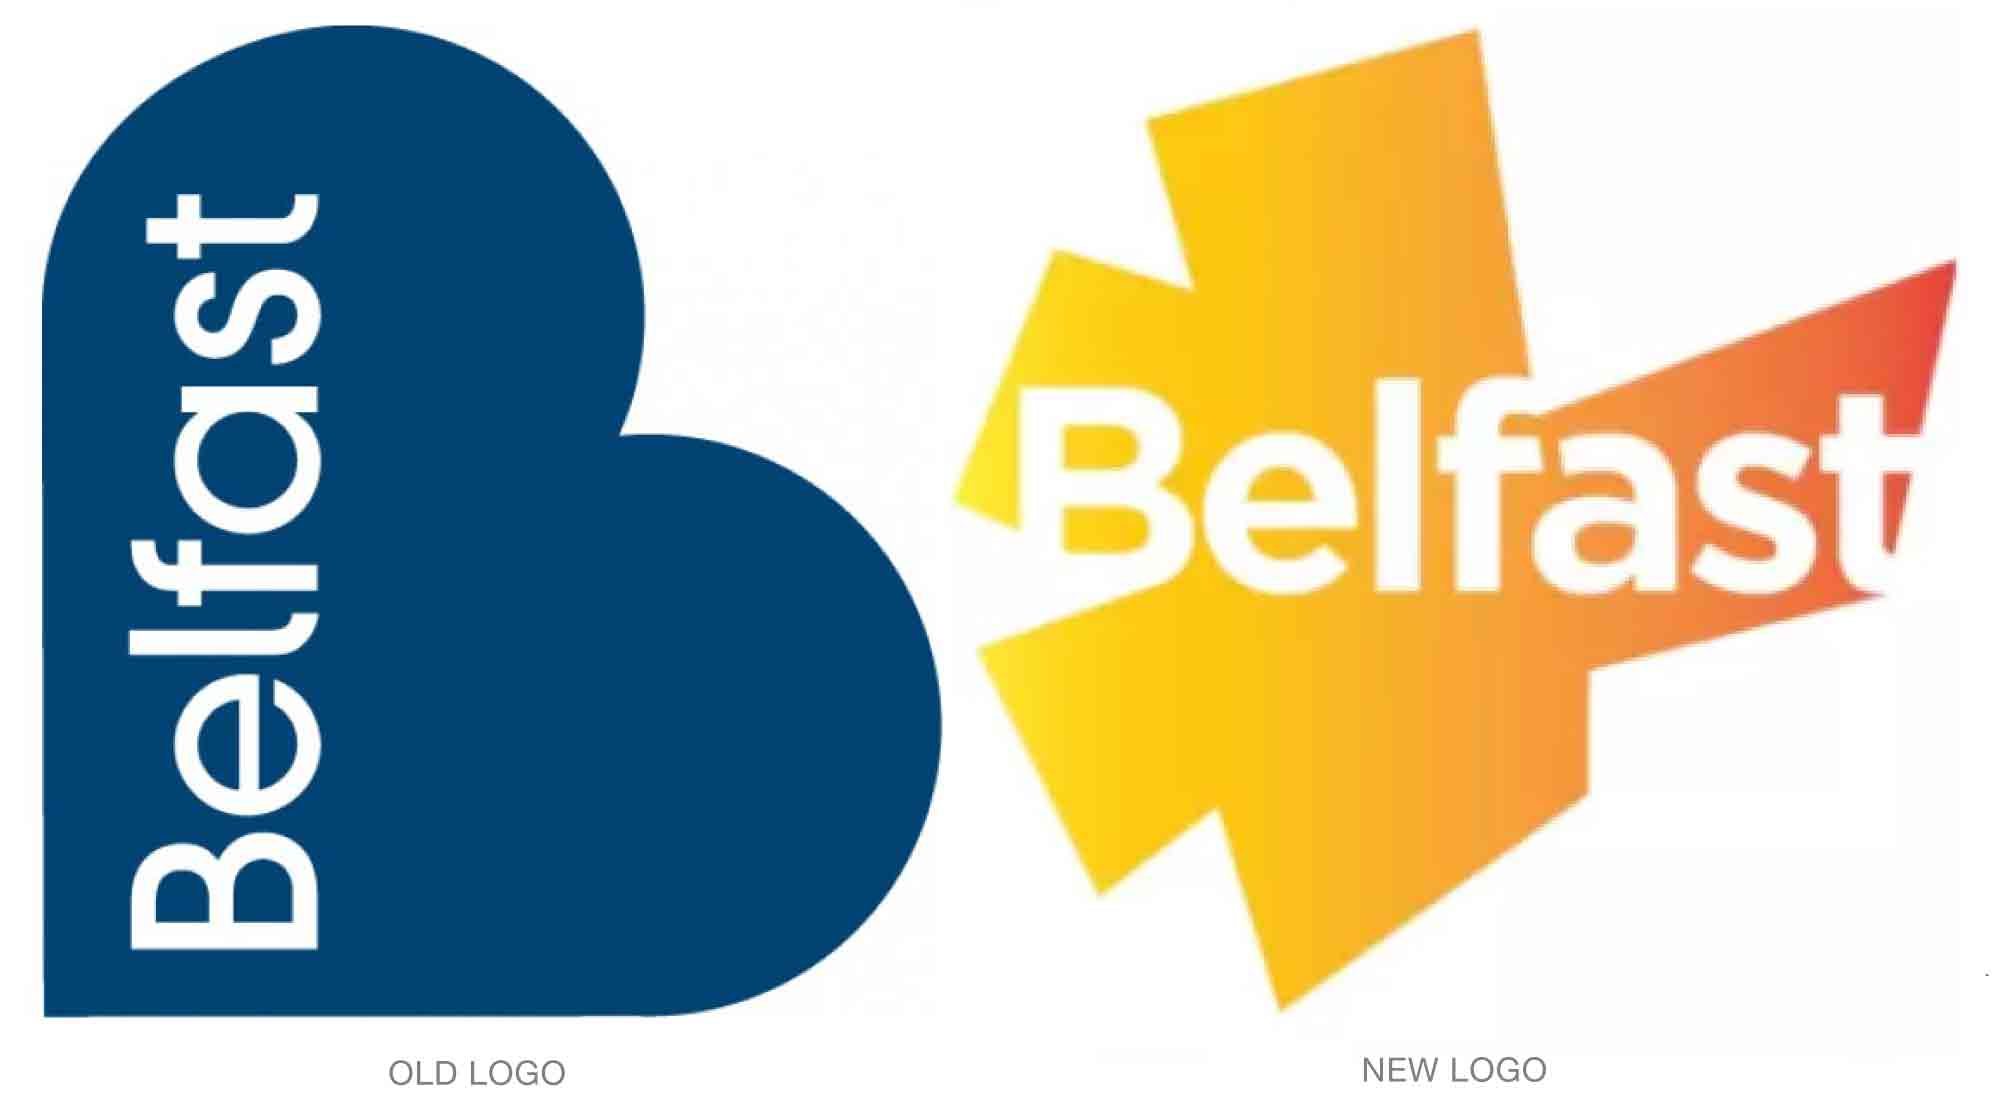 Old vs. New logo